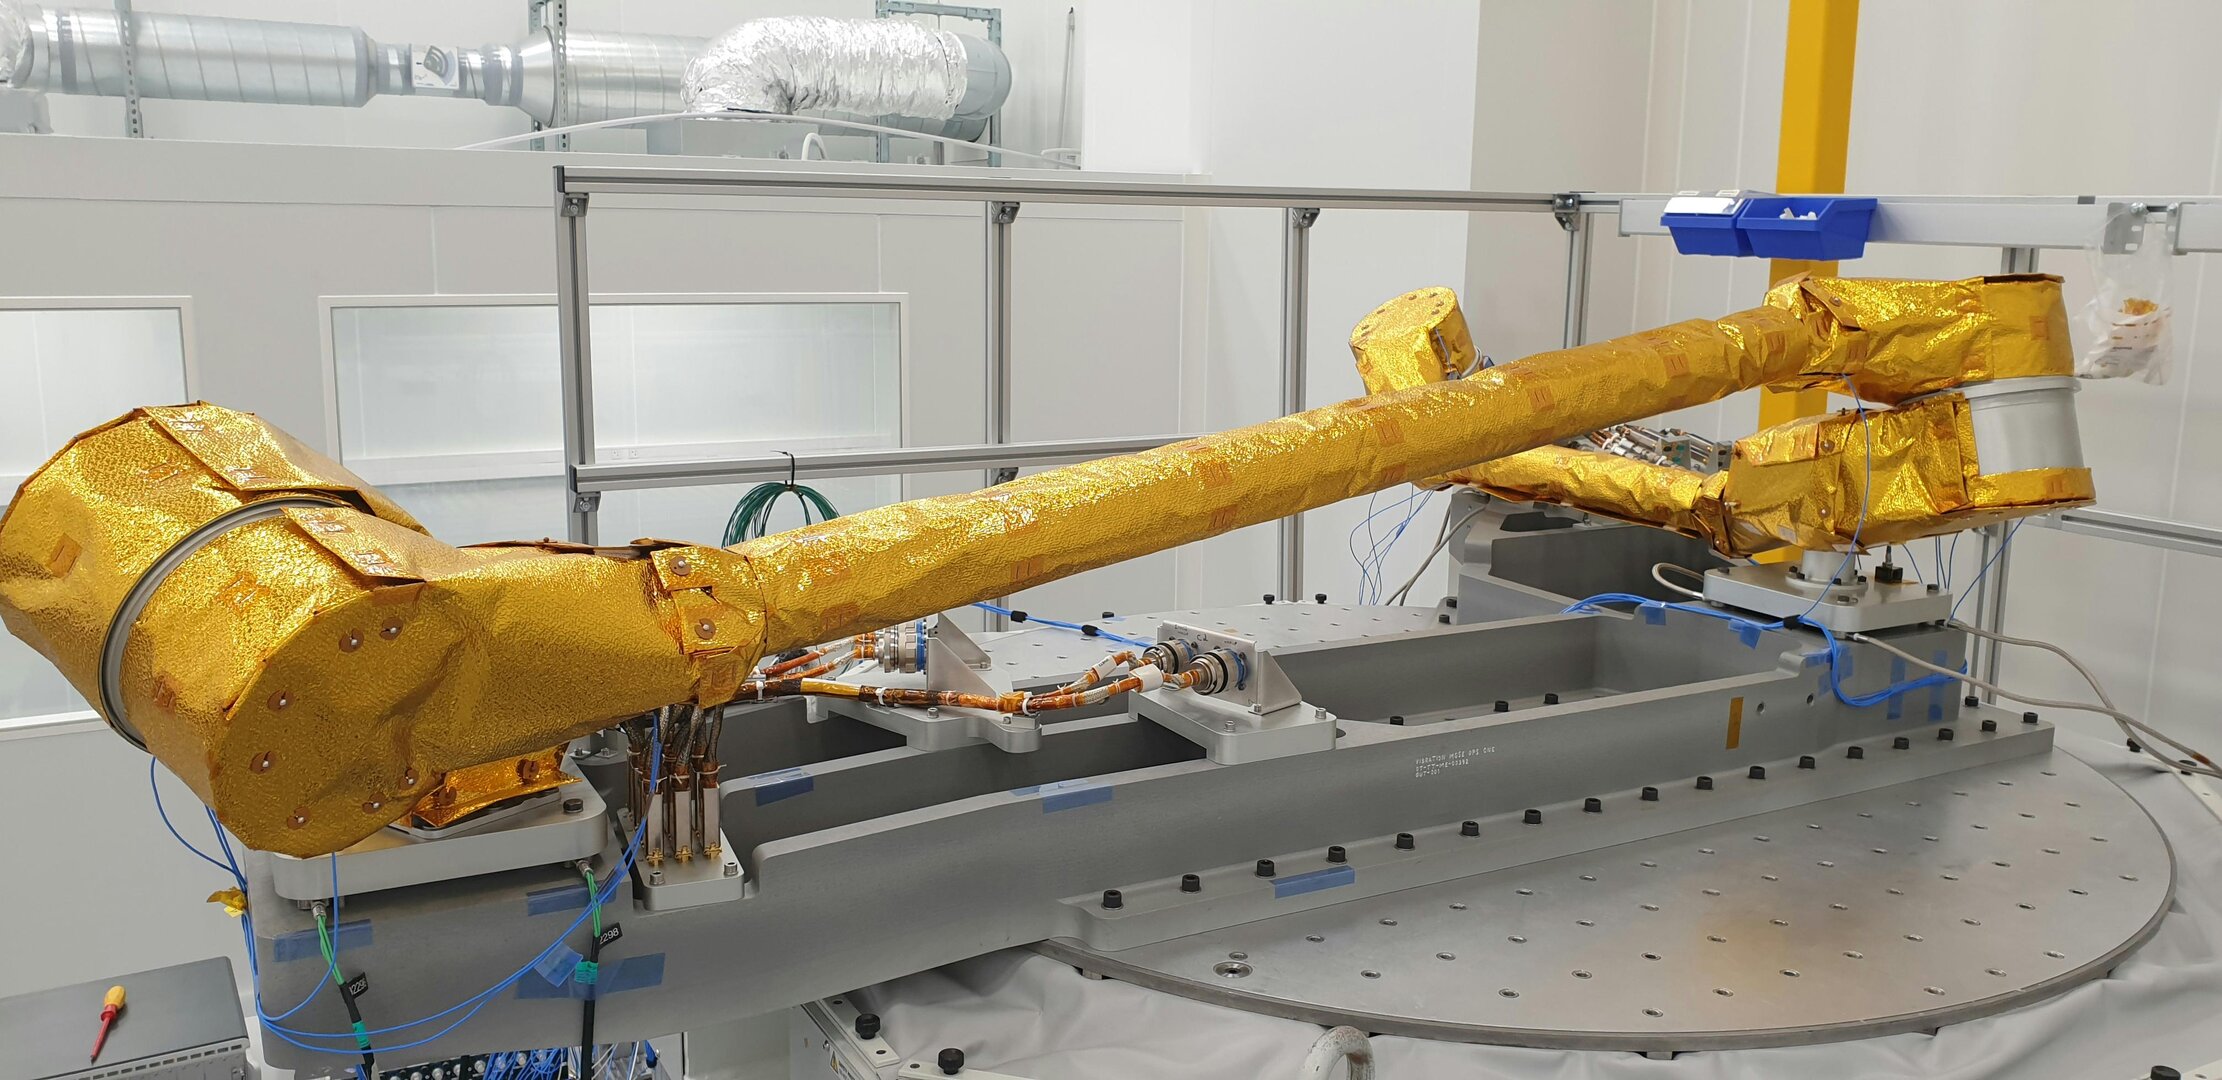 OneSat's robotic arm